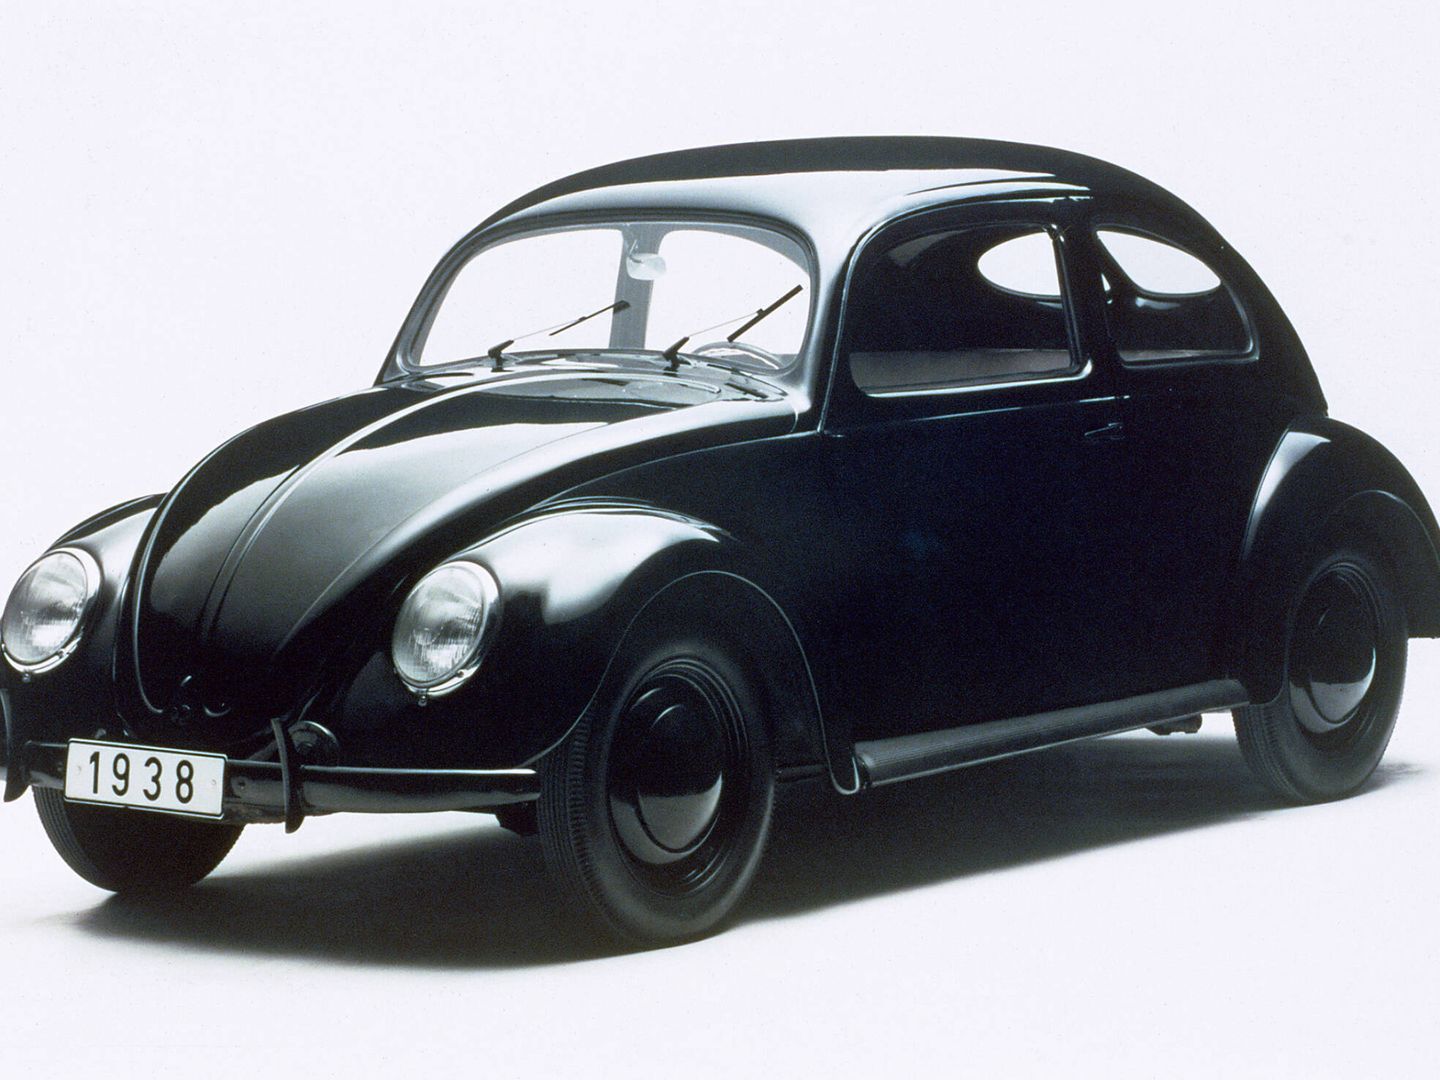 El origen del primer Volkswagen 'Escarabajo' fue una iniciativa de Adolf Hitler para dotar de un coche asequible a cualquier familia alemana.